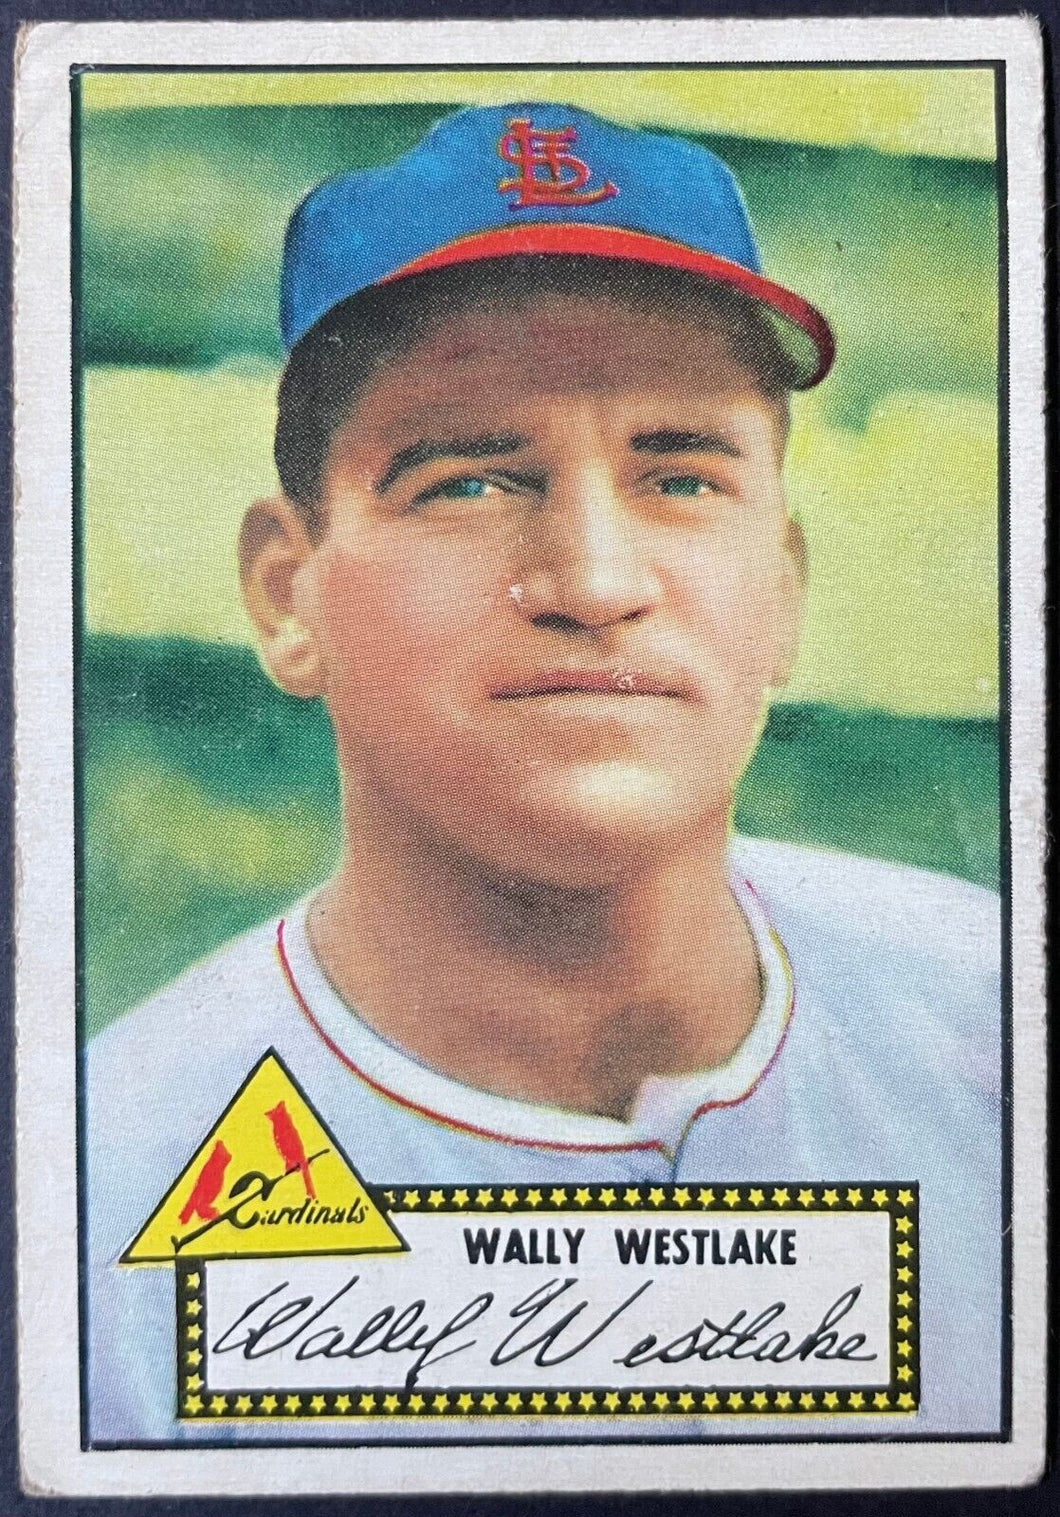 1952 Topps Baseball Wally Westlake #38 St. Louis Cardinals Vintage MLB Card